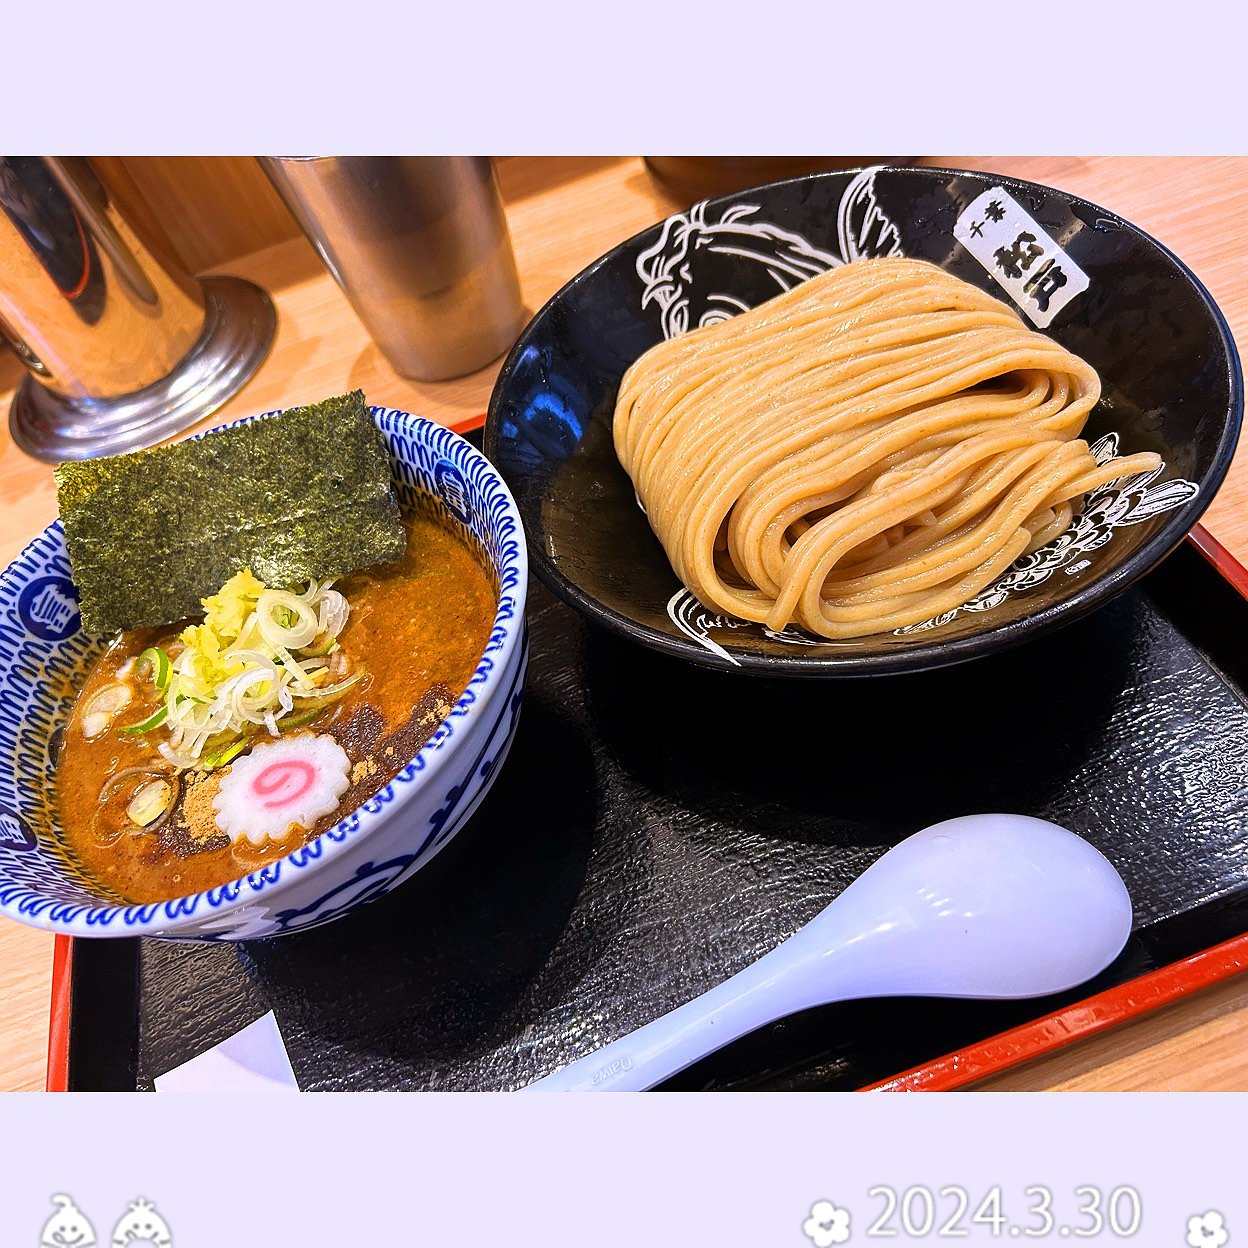 つけ麺〜♫

美味い( ^ω^ )

スープ割りは、断っちゃいました(･･;)

お腹膨れて無理。。。